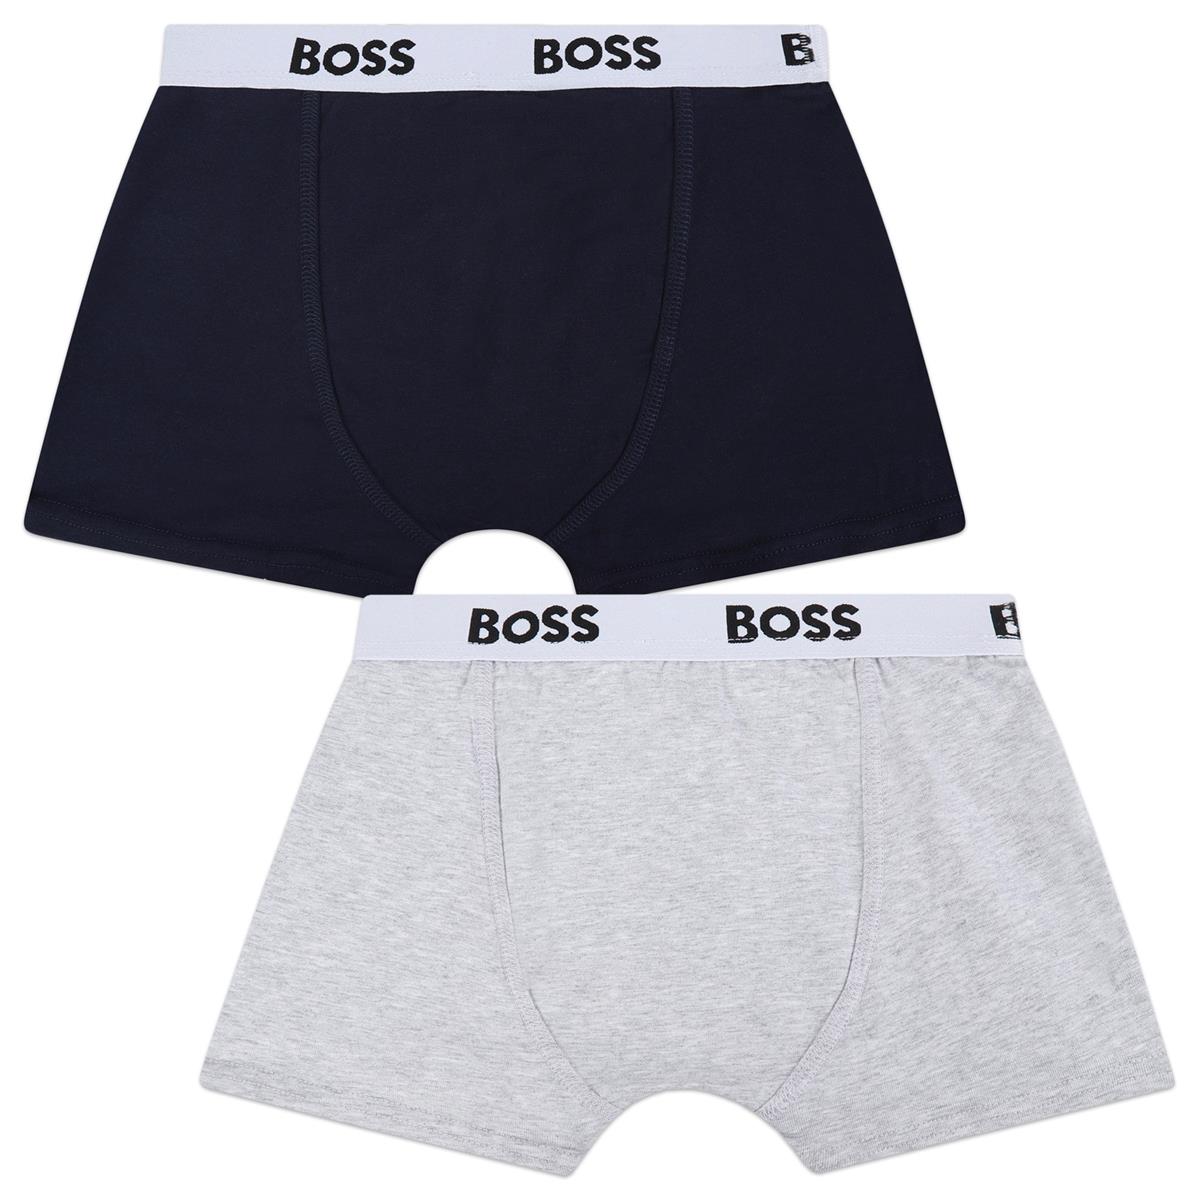 Boys Dark Blue Cotton Underwear Set(2 Pack)